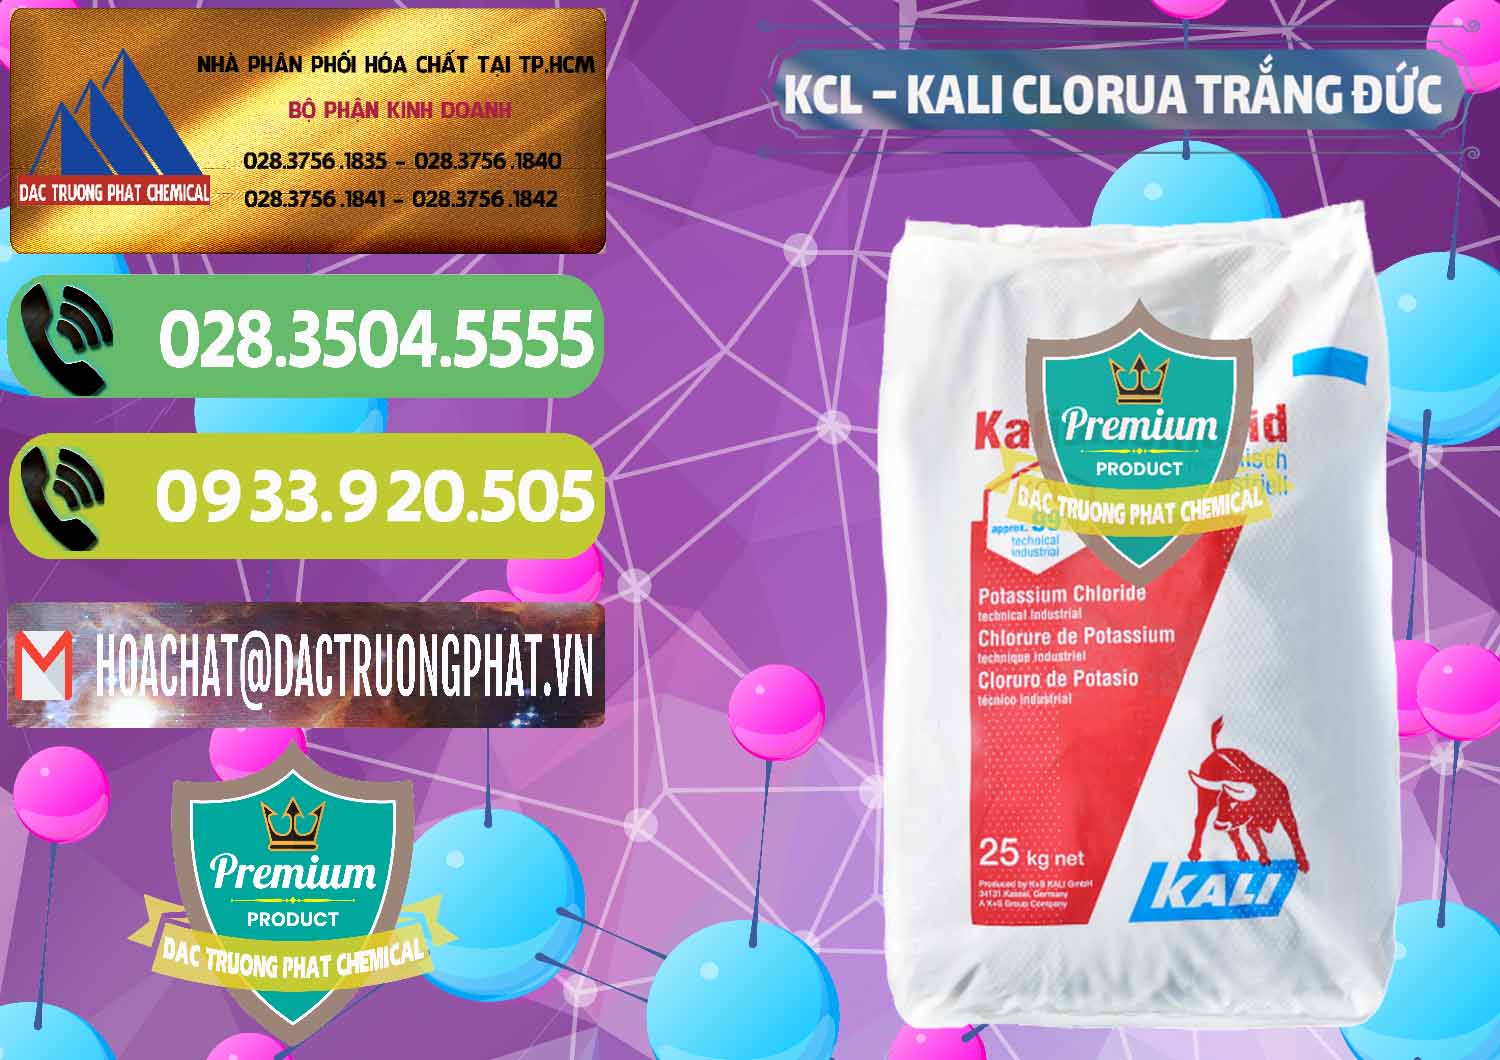 Đơn vị chuyên bán & cung cấp KCL – Kali Clorua Trắng Đức Germany - 0086 - Công ty bán - phân phối hóa chất tại TP.HCM - hoachatmientay.vn